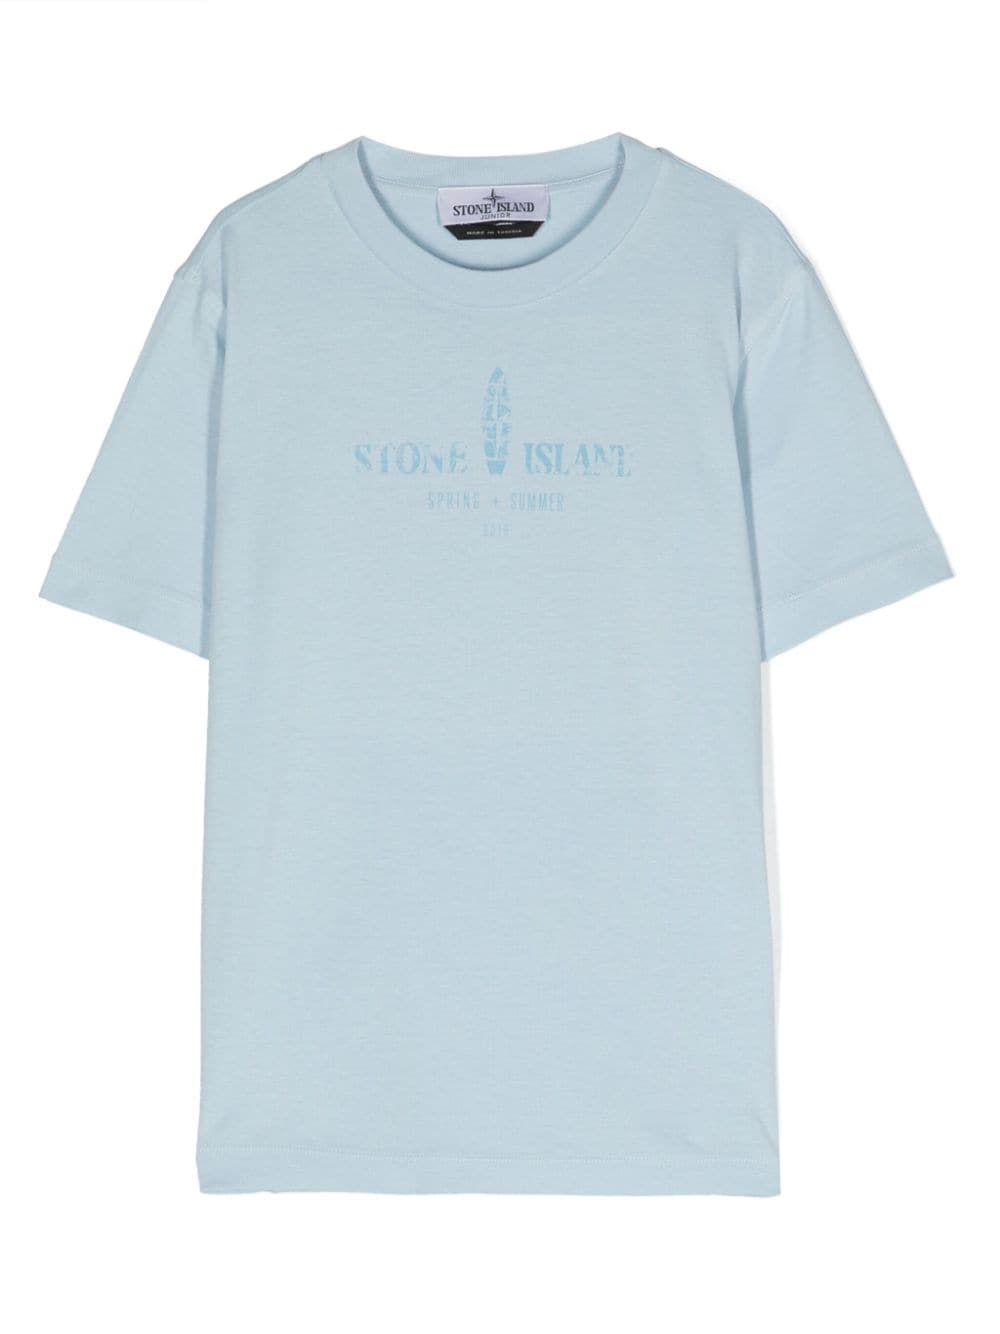 T-shirt celeste con stampa Compass fronte/retro